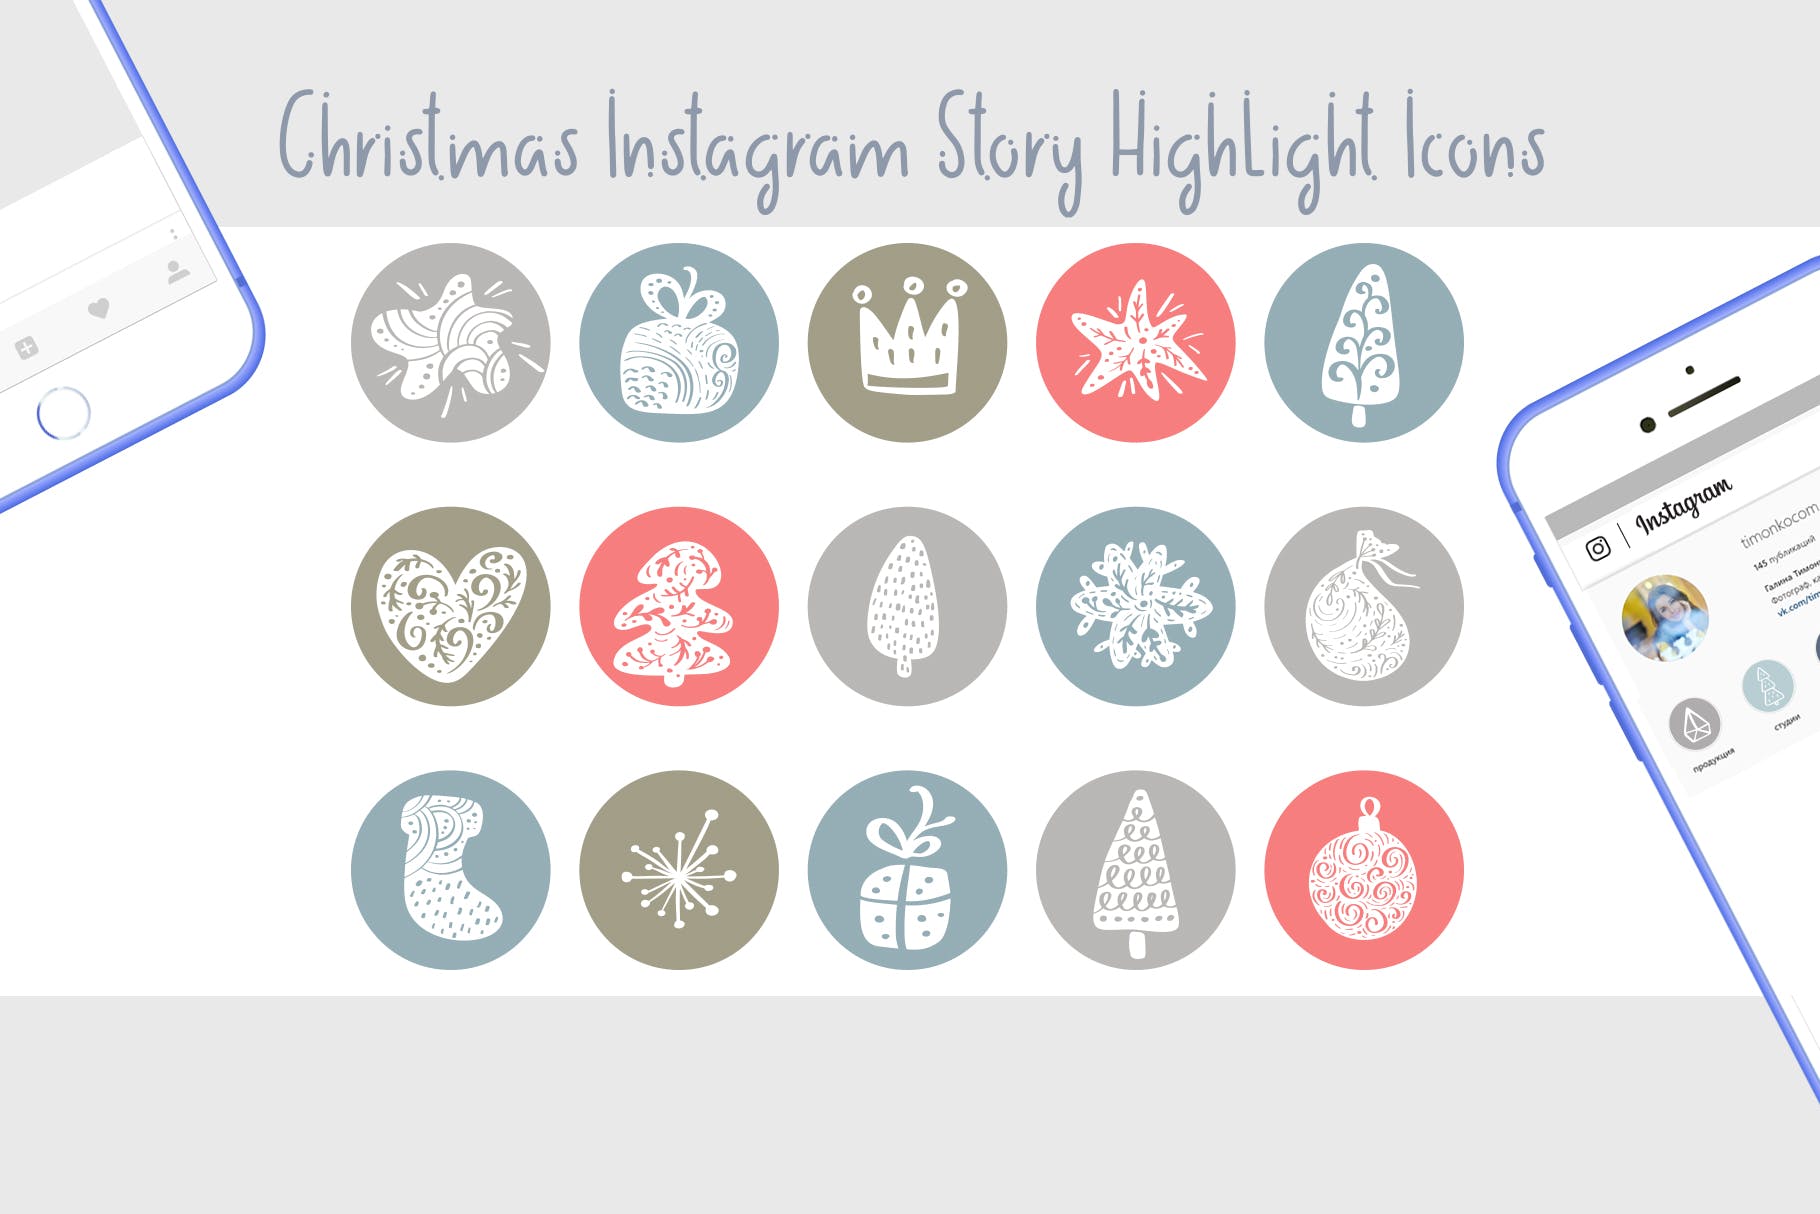 圣诞节主题矢量手绘素材库精选图标素材 Christmas Instagram highlight story icons插图(1)